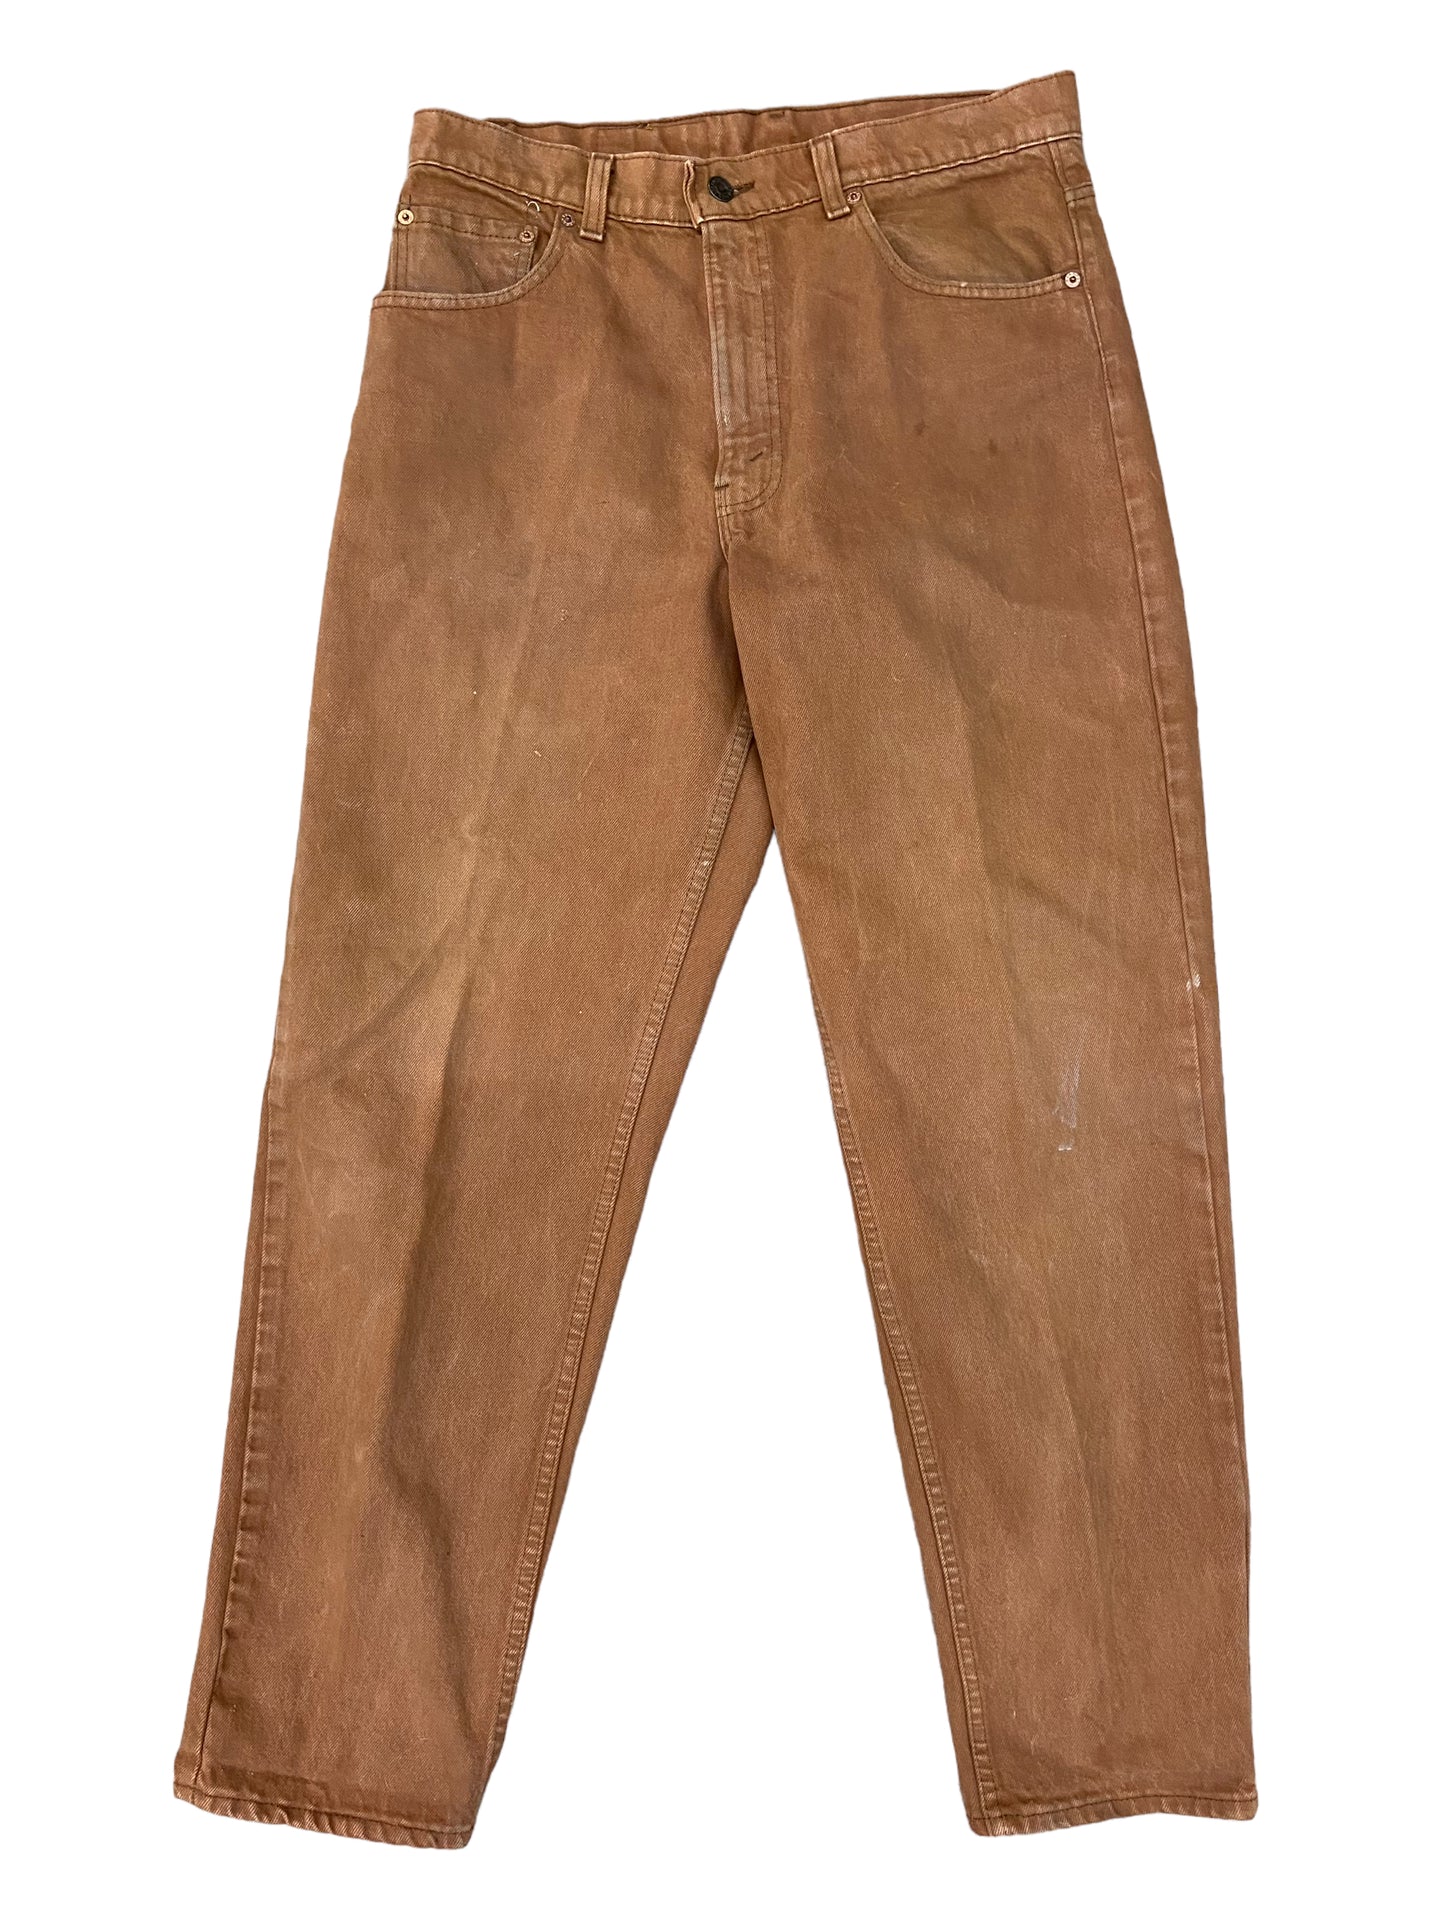 VTG 550 Brown Levi's Jeans Sz 34x30